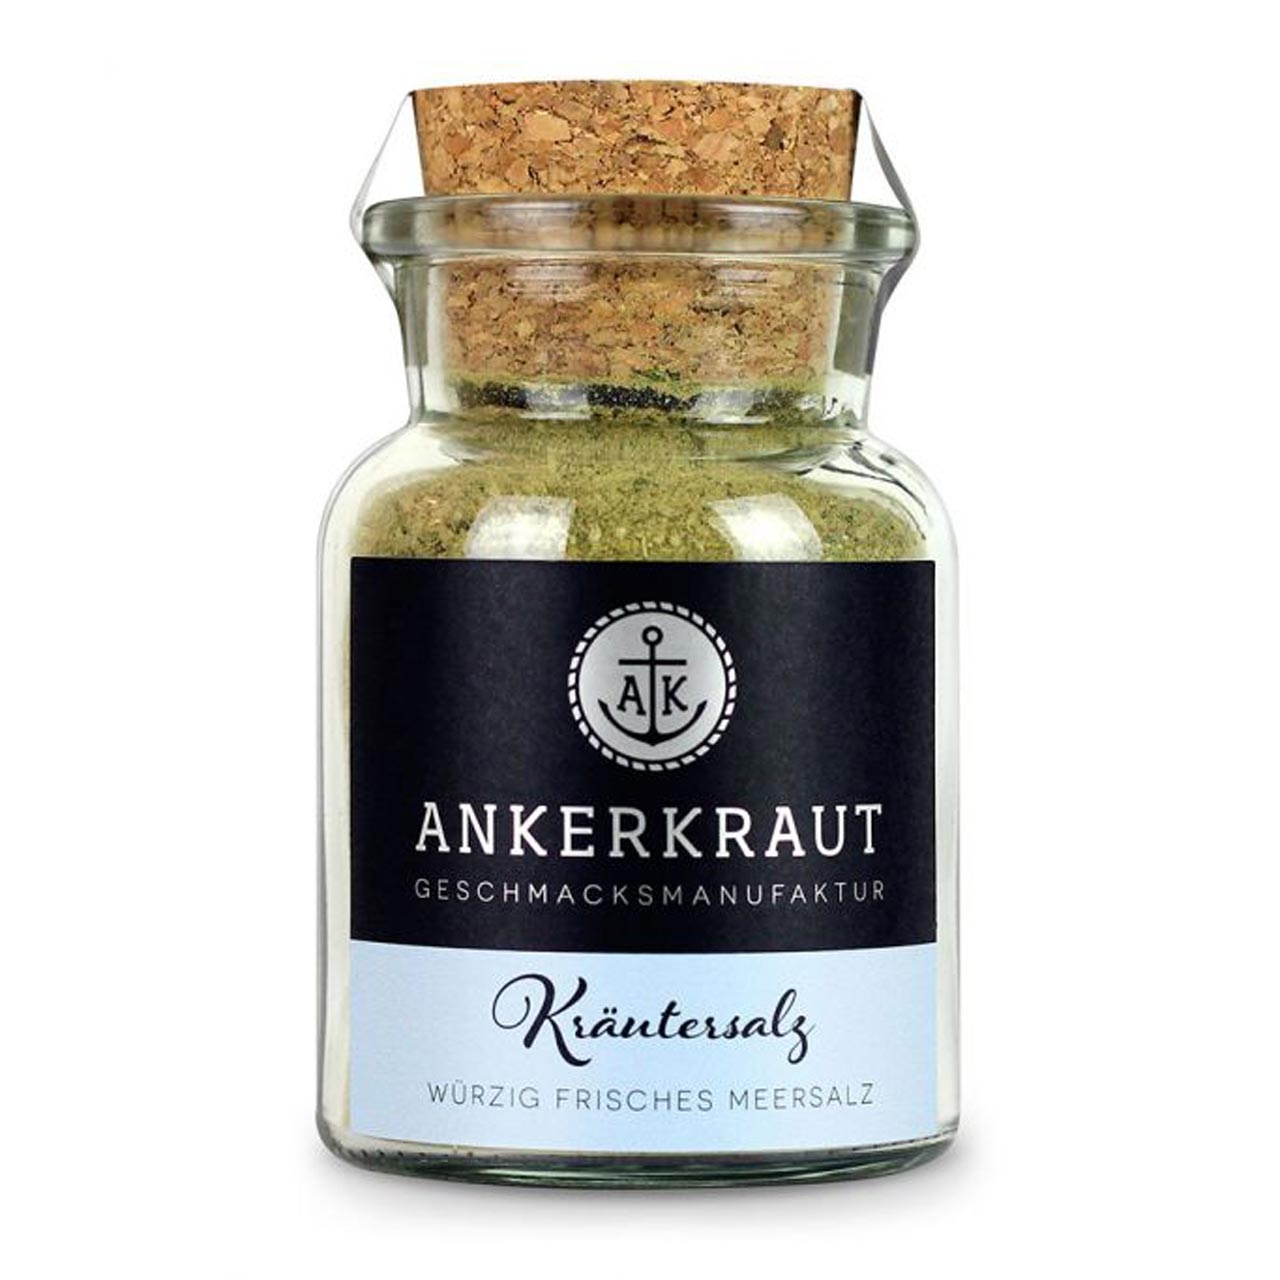 Ankerkraut Kräutersalz